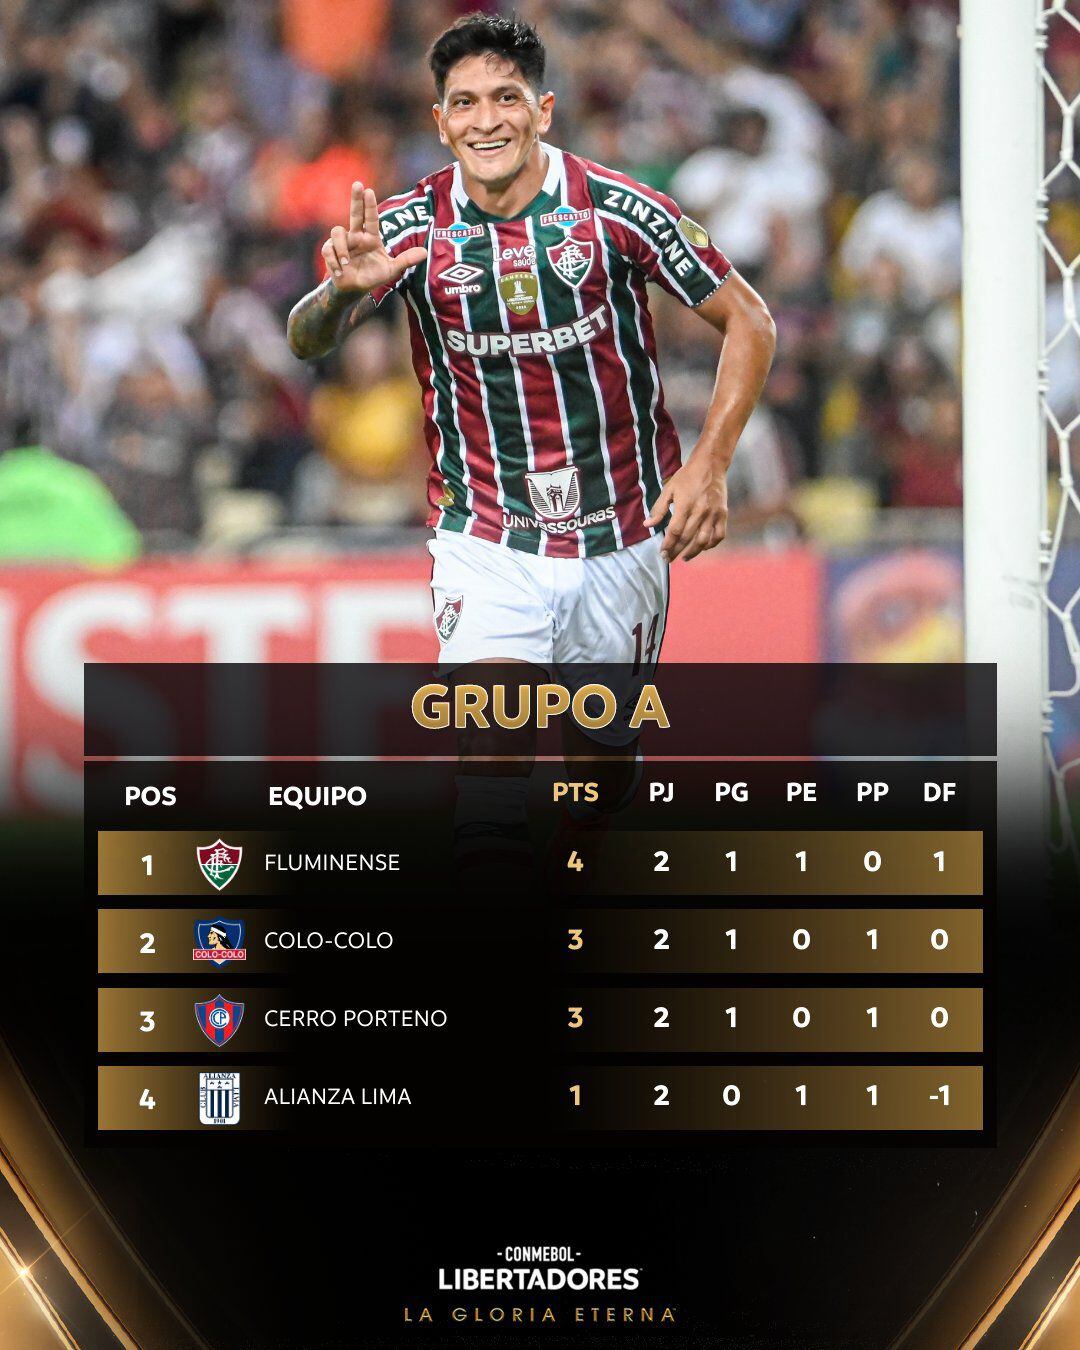 Alianza Lima se ubicá en el último puesto de su serie con tan solo un punto.